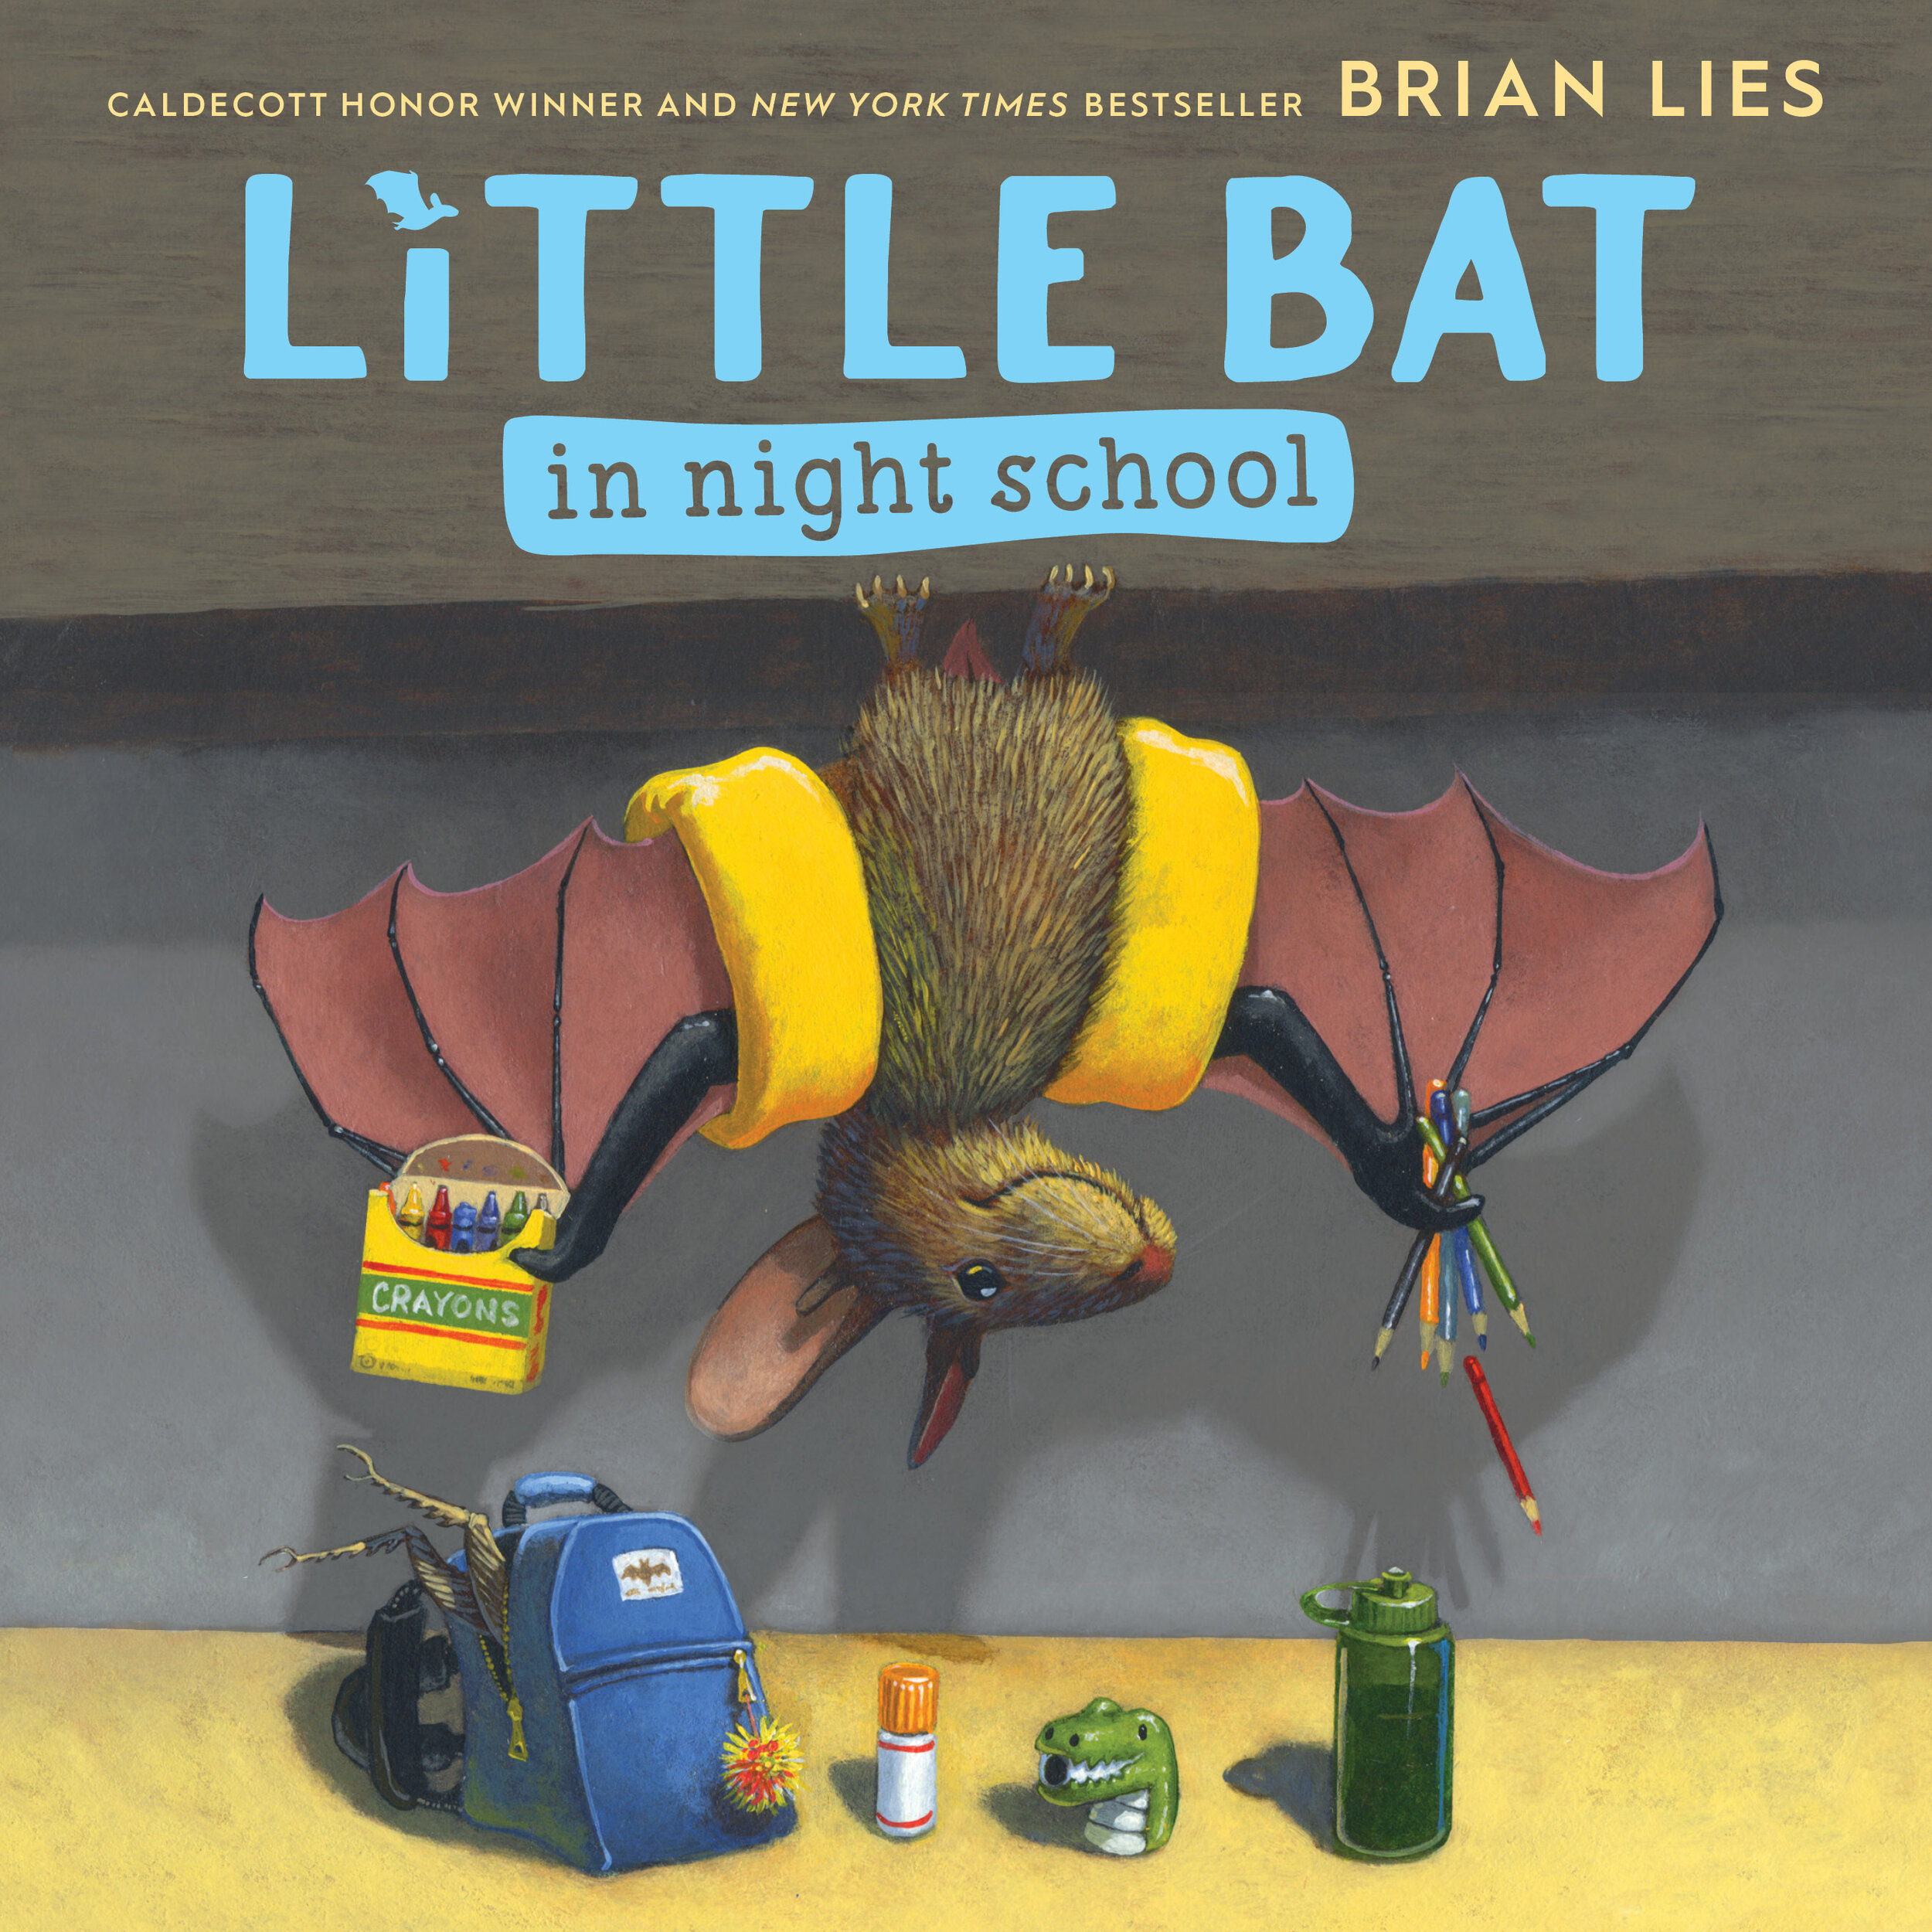 Little Bat in Night School